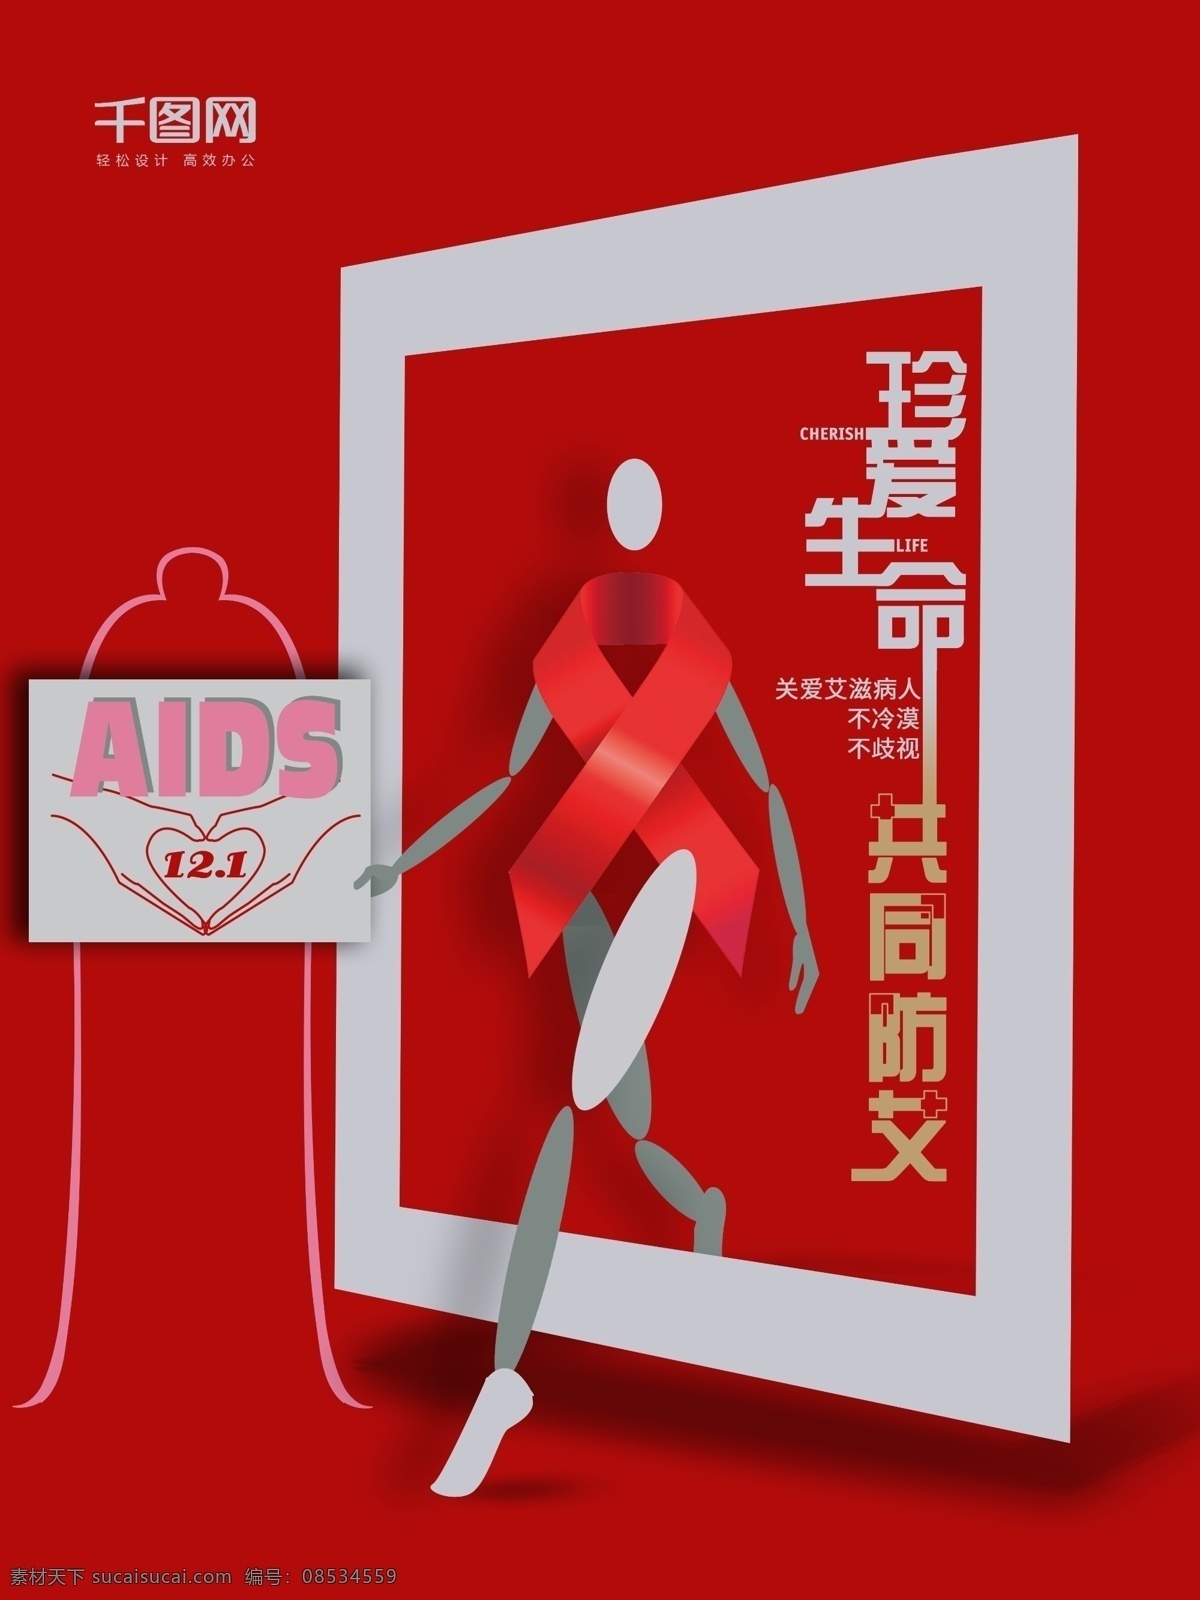 世界 艾滋病 aids 海报 世界艾滋病日 珍爱生命 关爱艾滋病 不冷漠不歧视 共同防艾